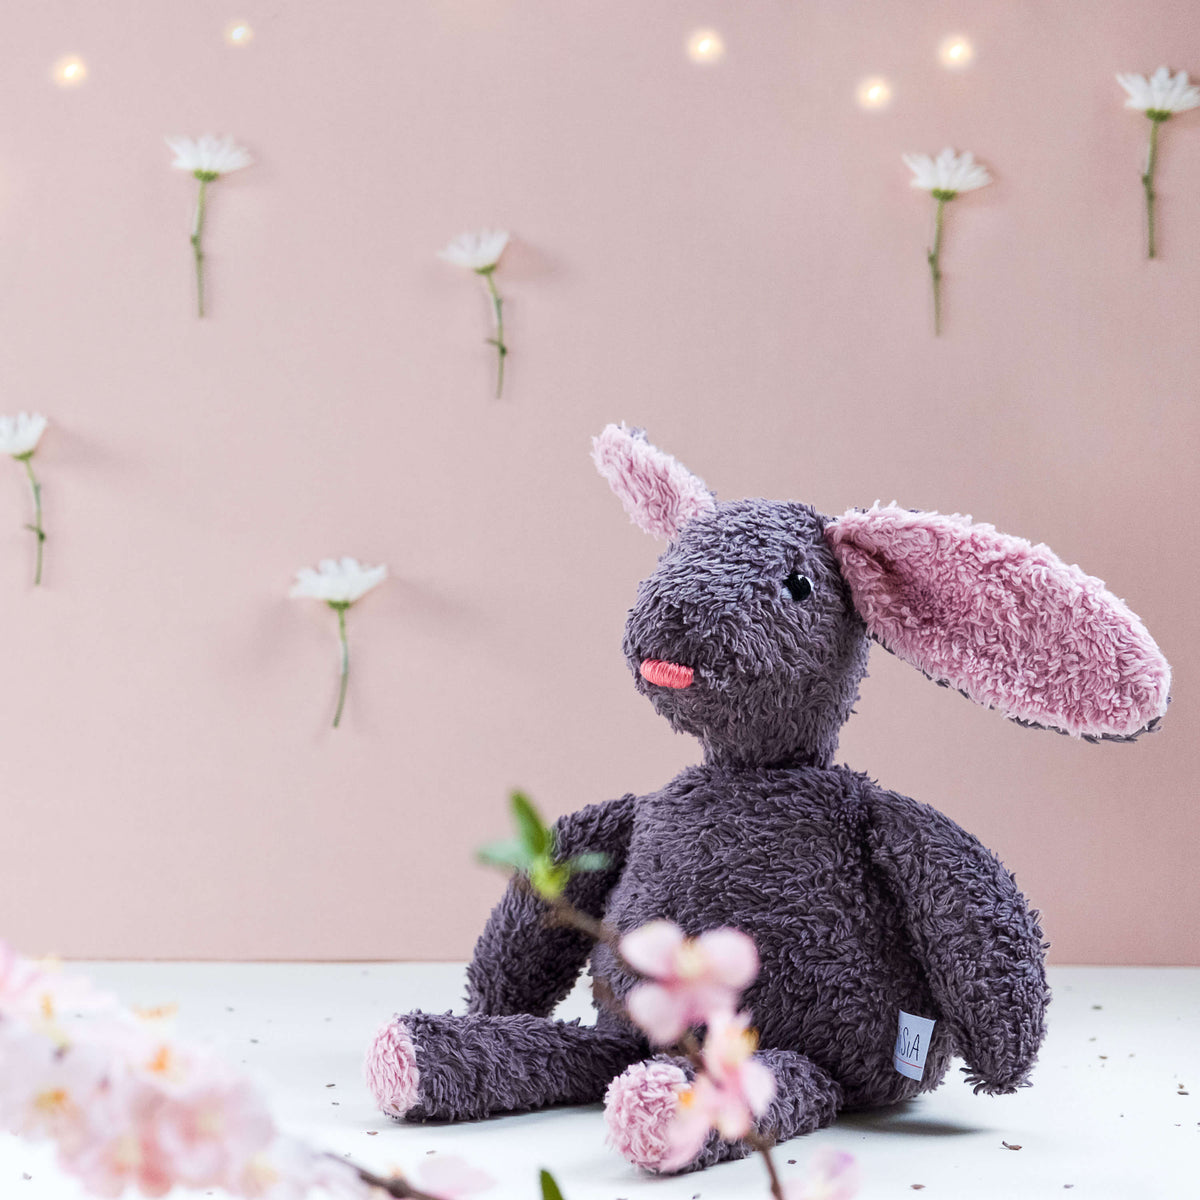 El conejo Gastón. Muñeco de peluche hecho a mano con telas y relleno de algodón orgánico y ecológico.